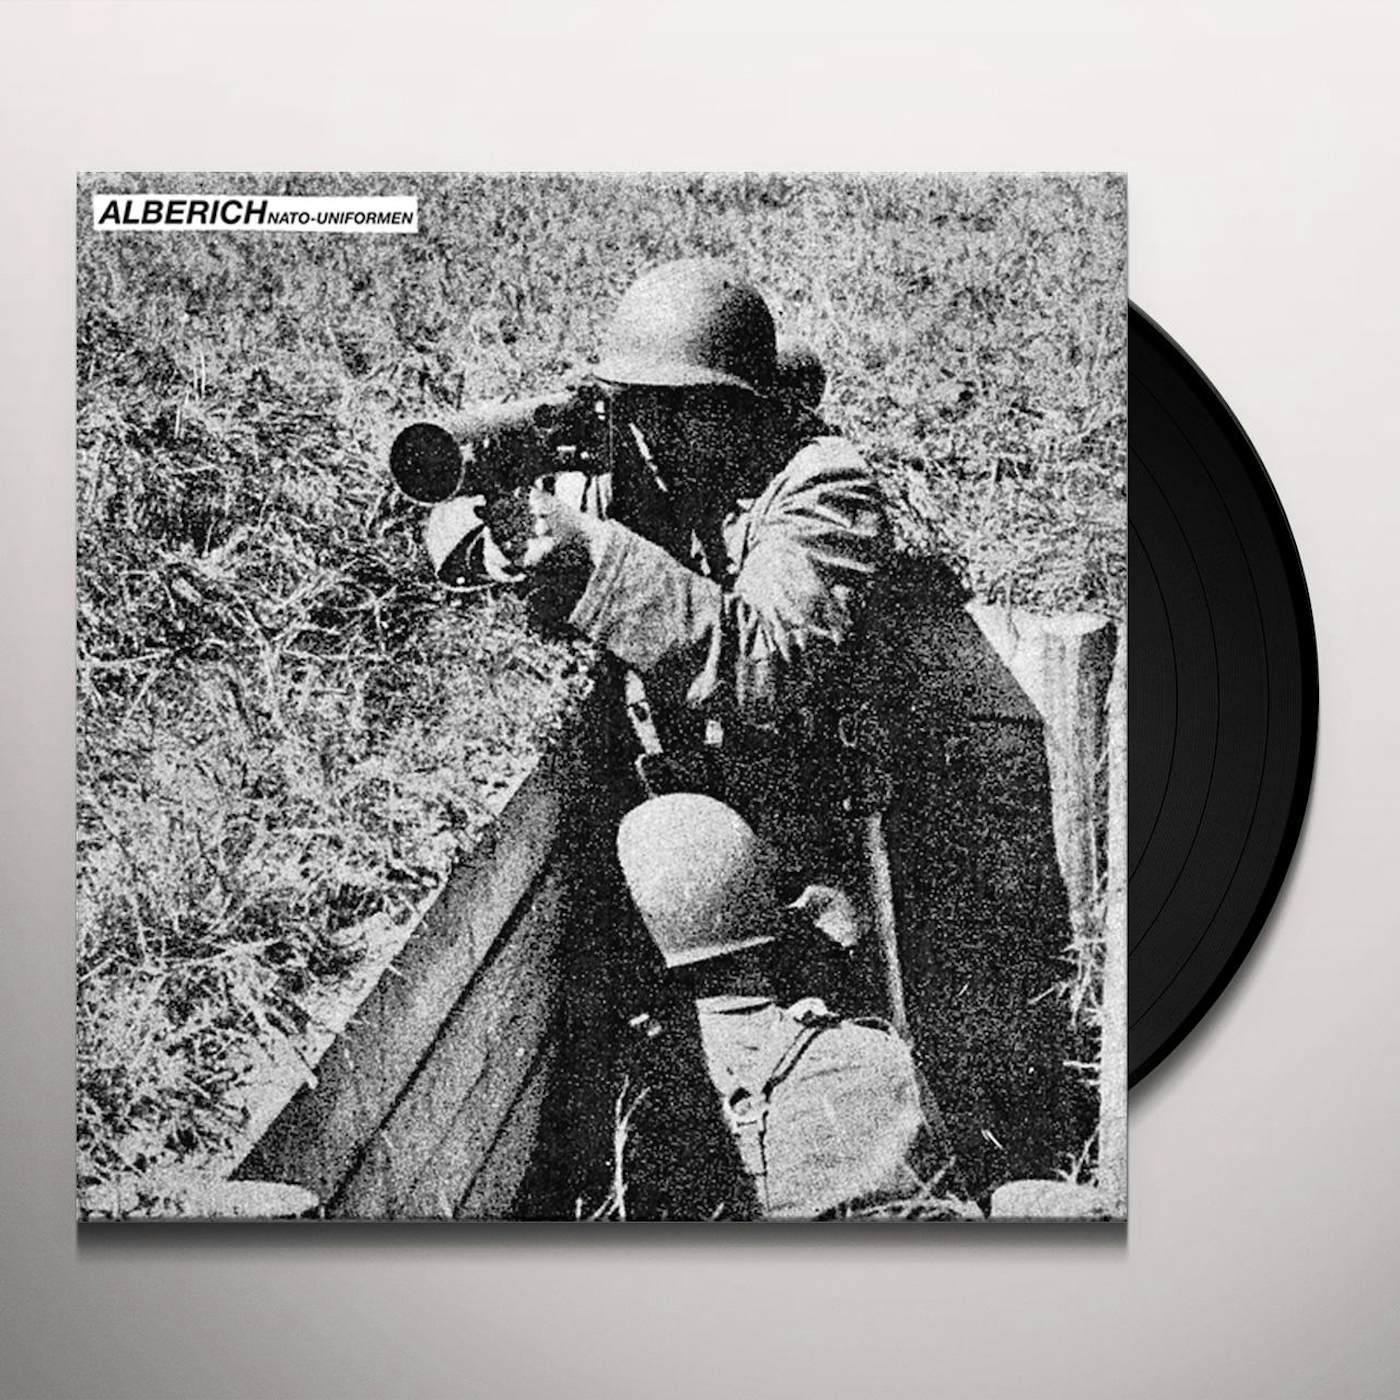 Alberich NATO-Uniformen Vinyl Record